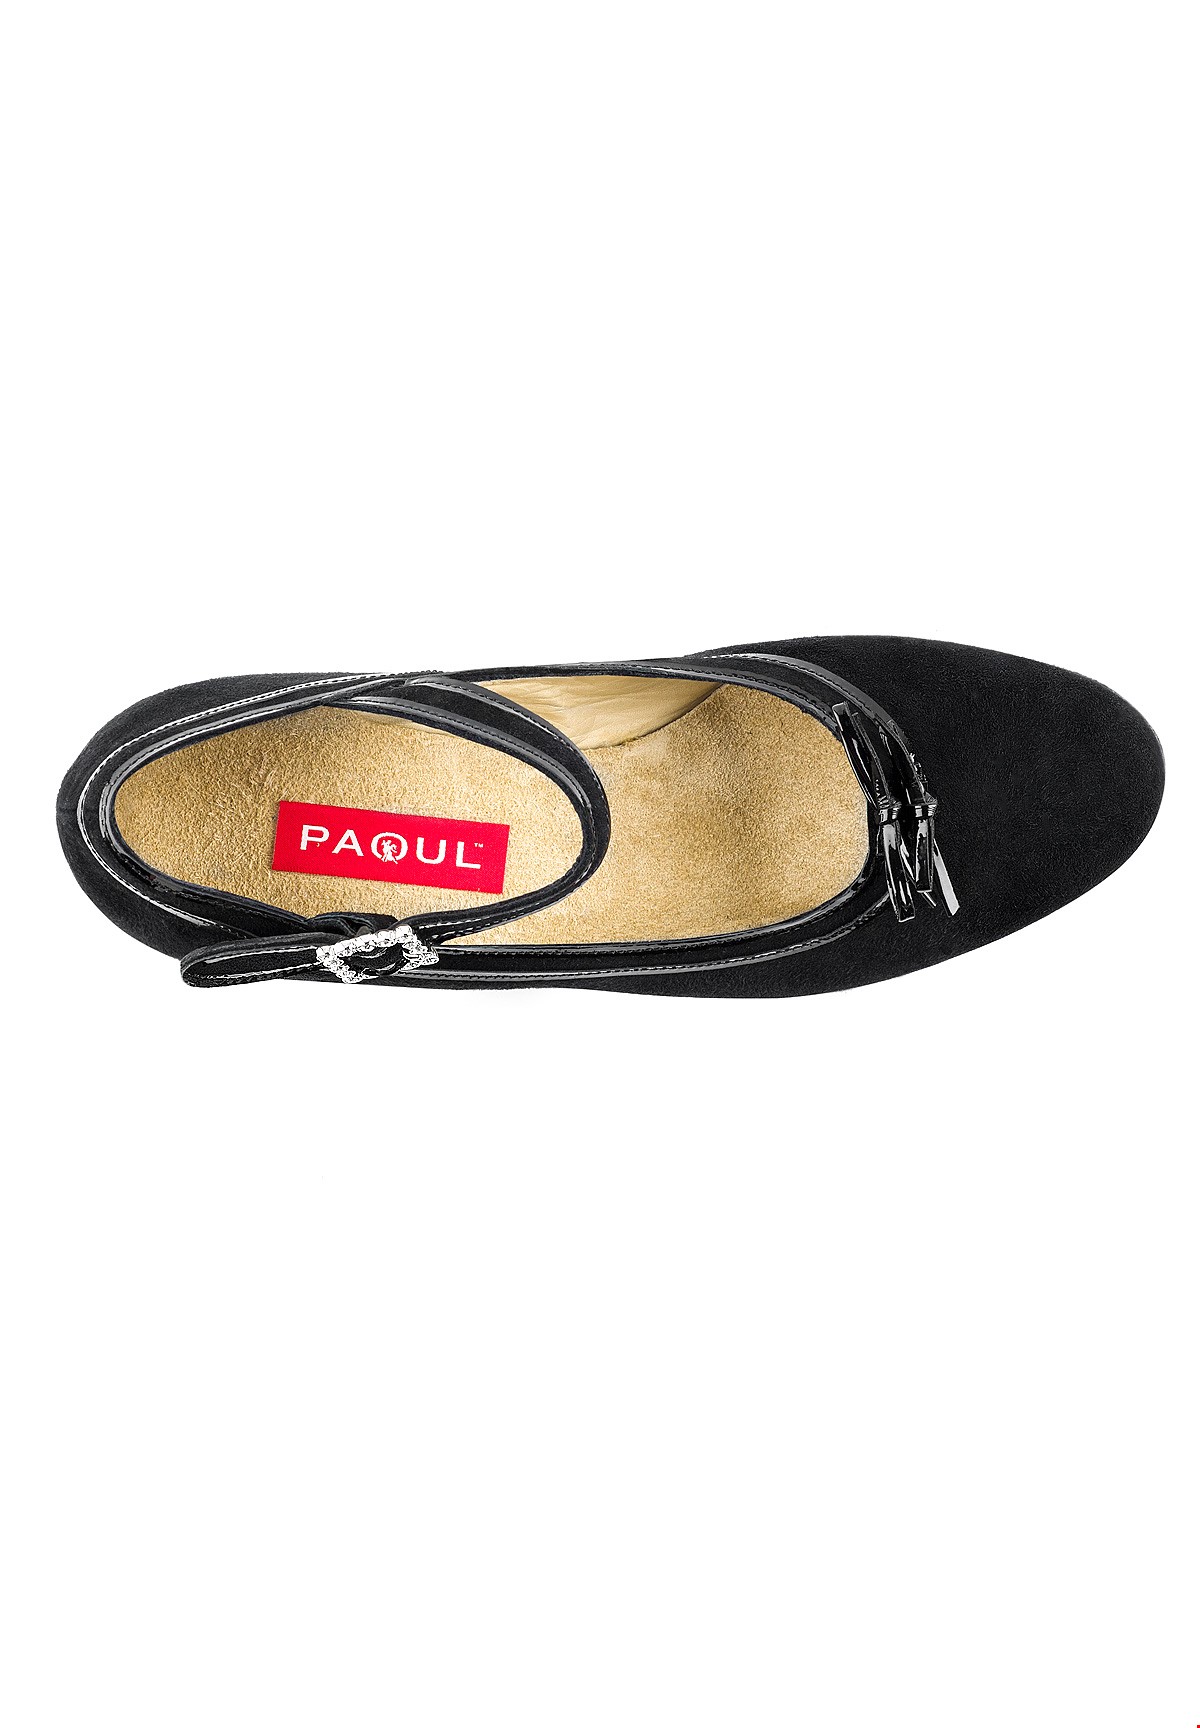 Paoul 1079 Carlo IX Shoes